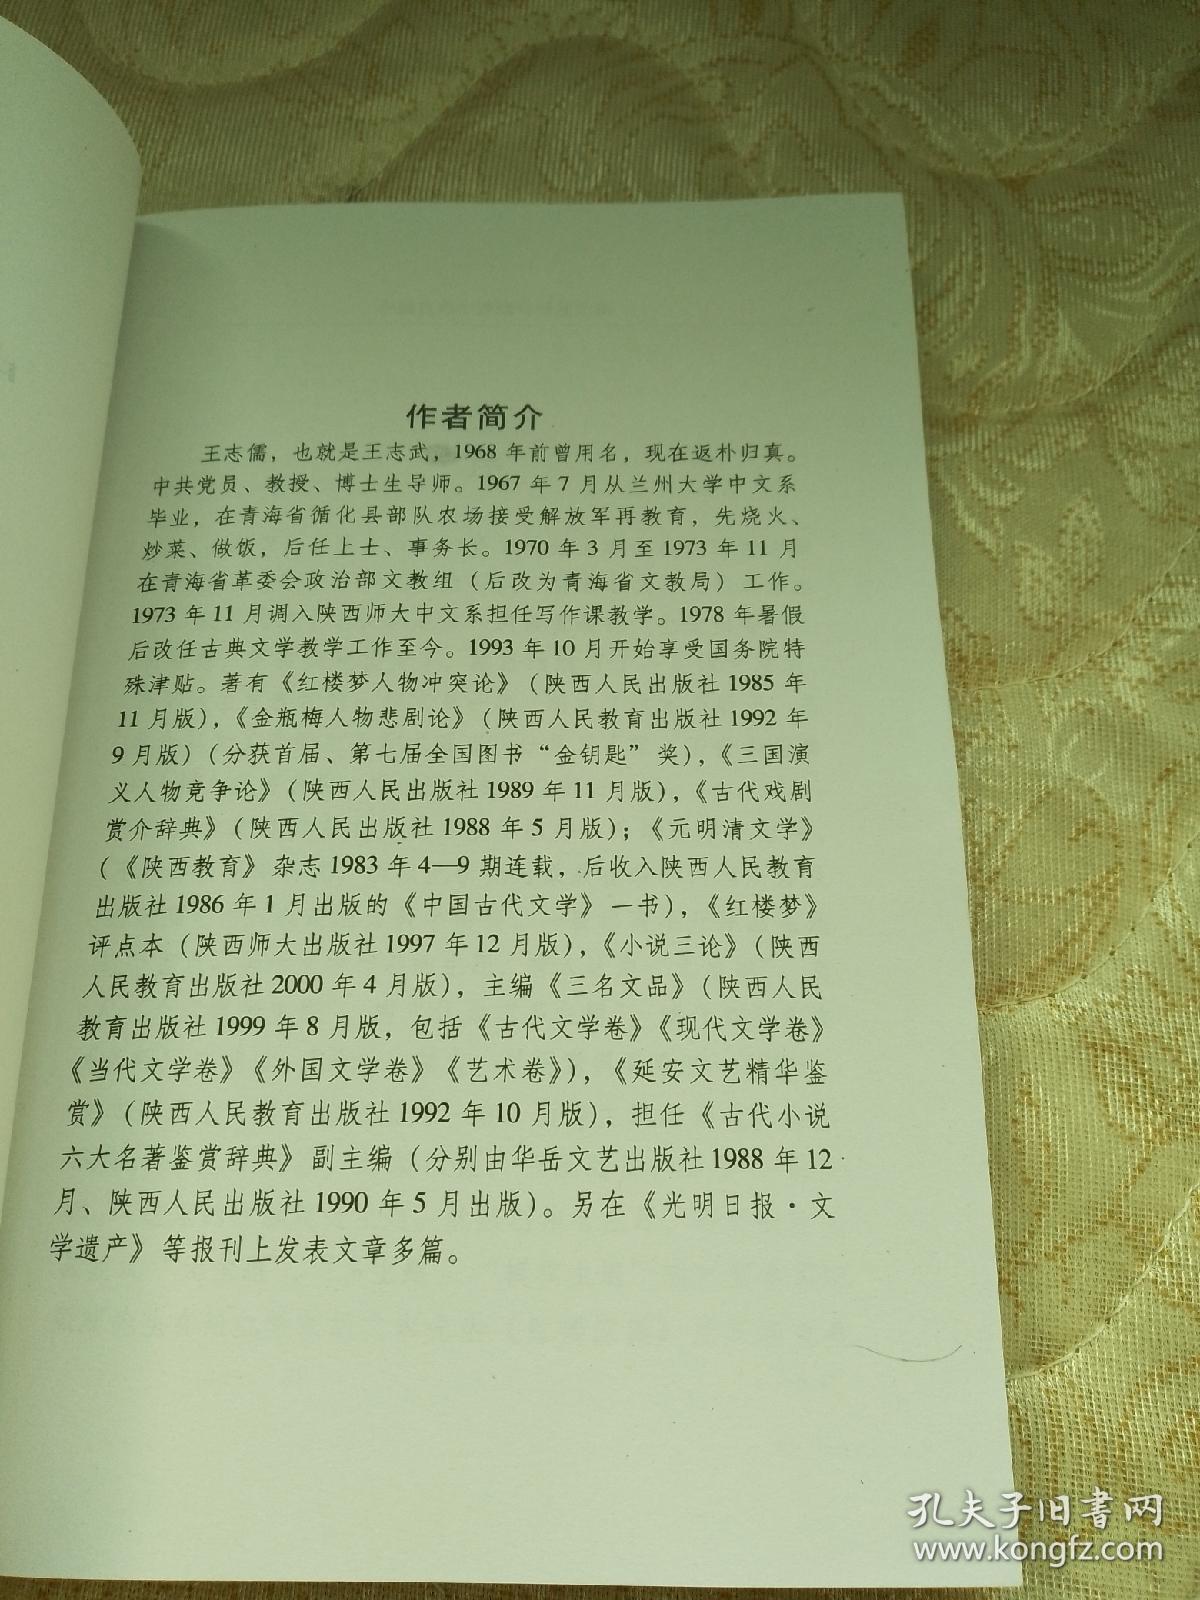 中国古典小说戏曲研究论集【2006年5月一版一印】